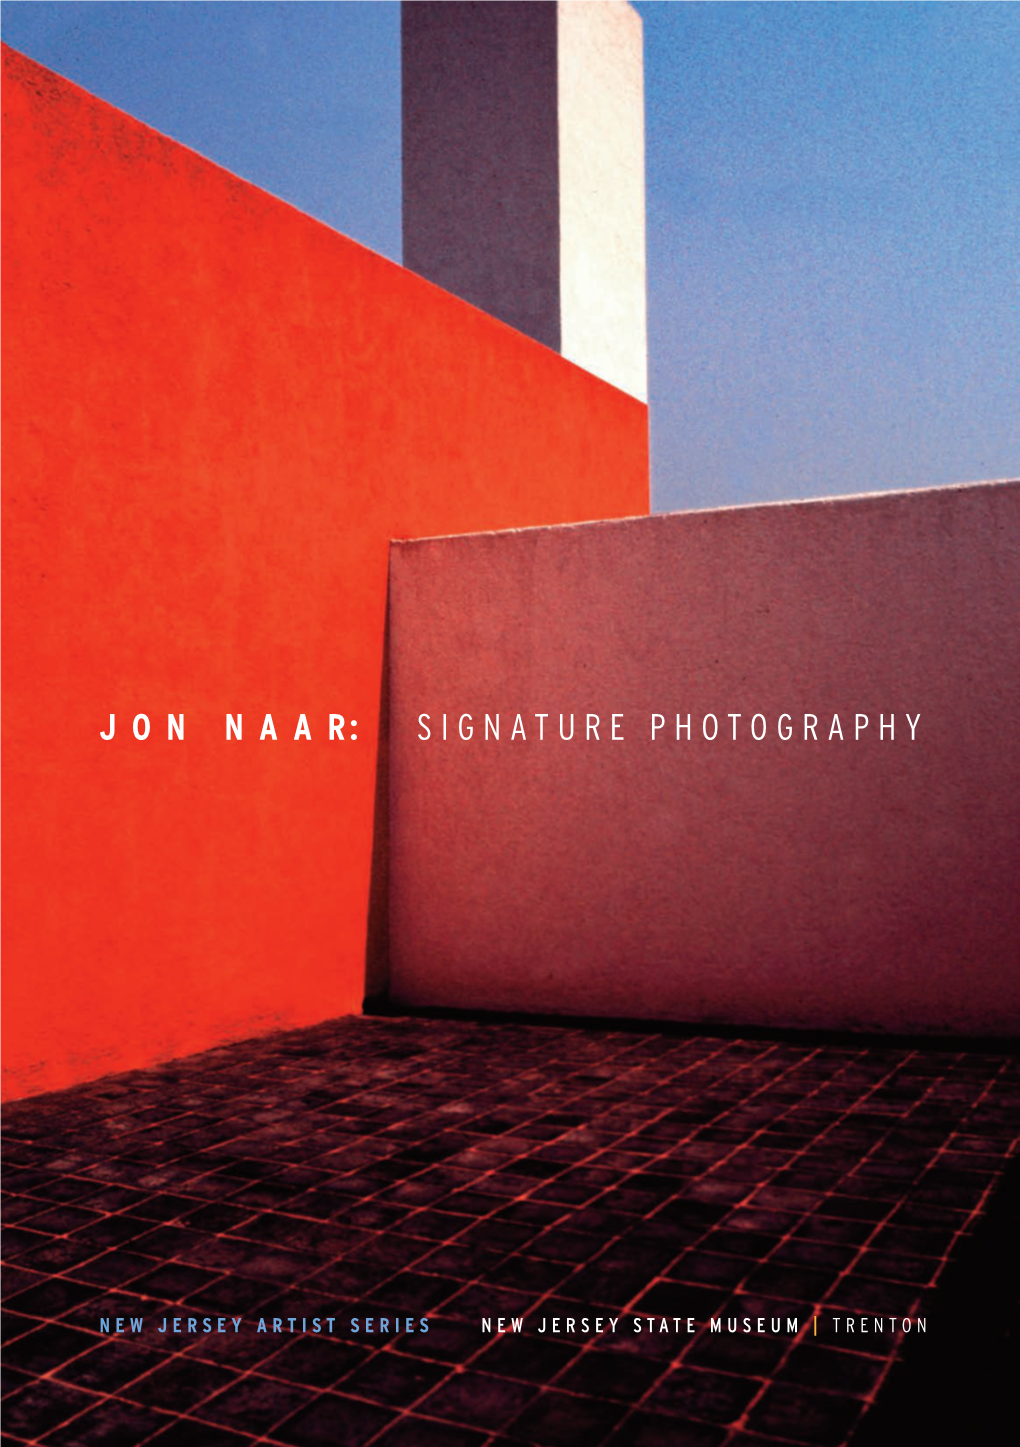 Jon Naar: Signature Photography